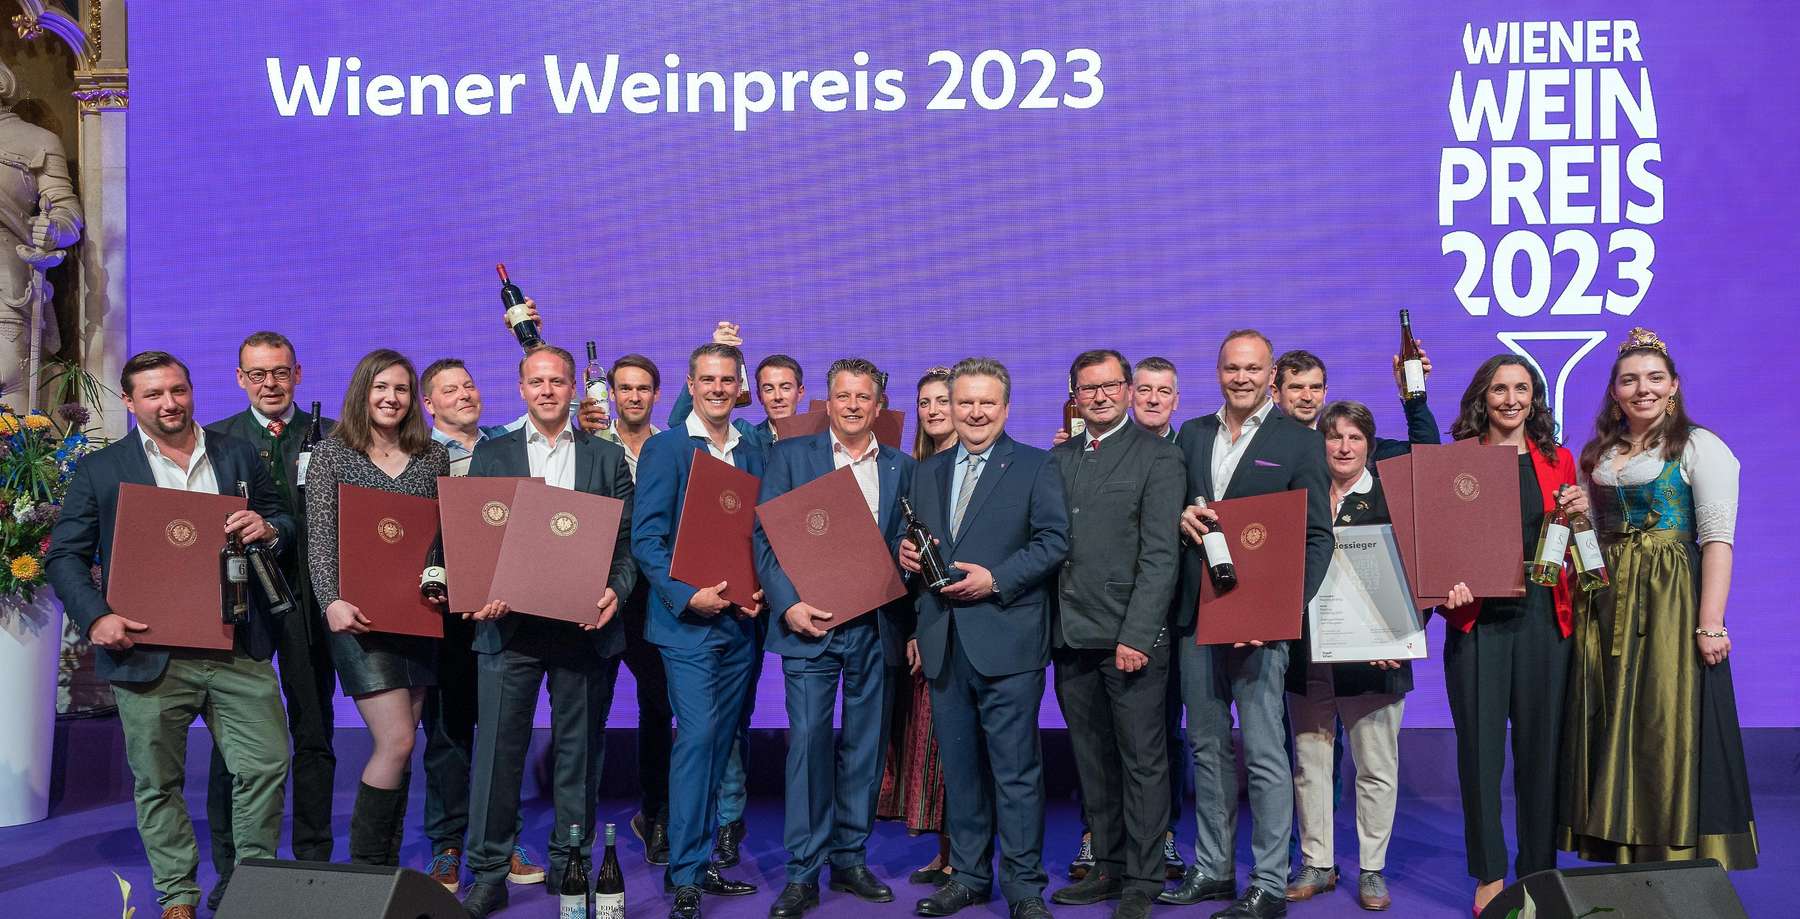 Gruppenfoto Wiener Weinpreis 2023.jpg